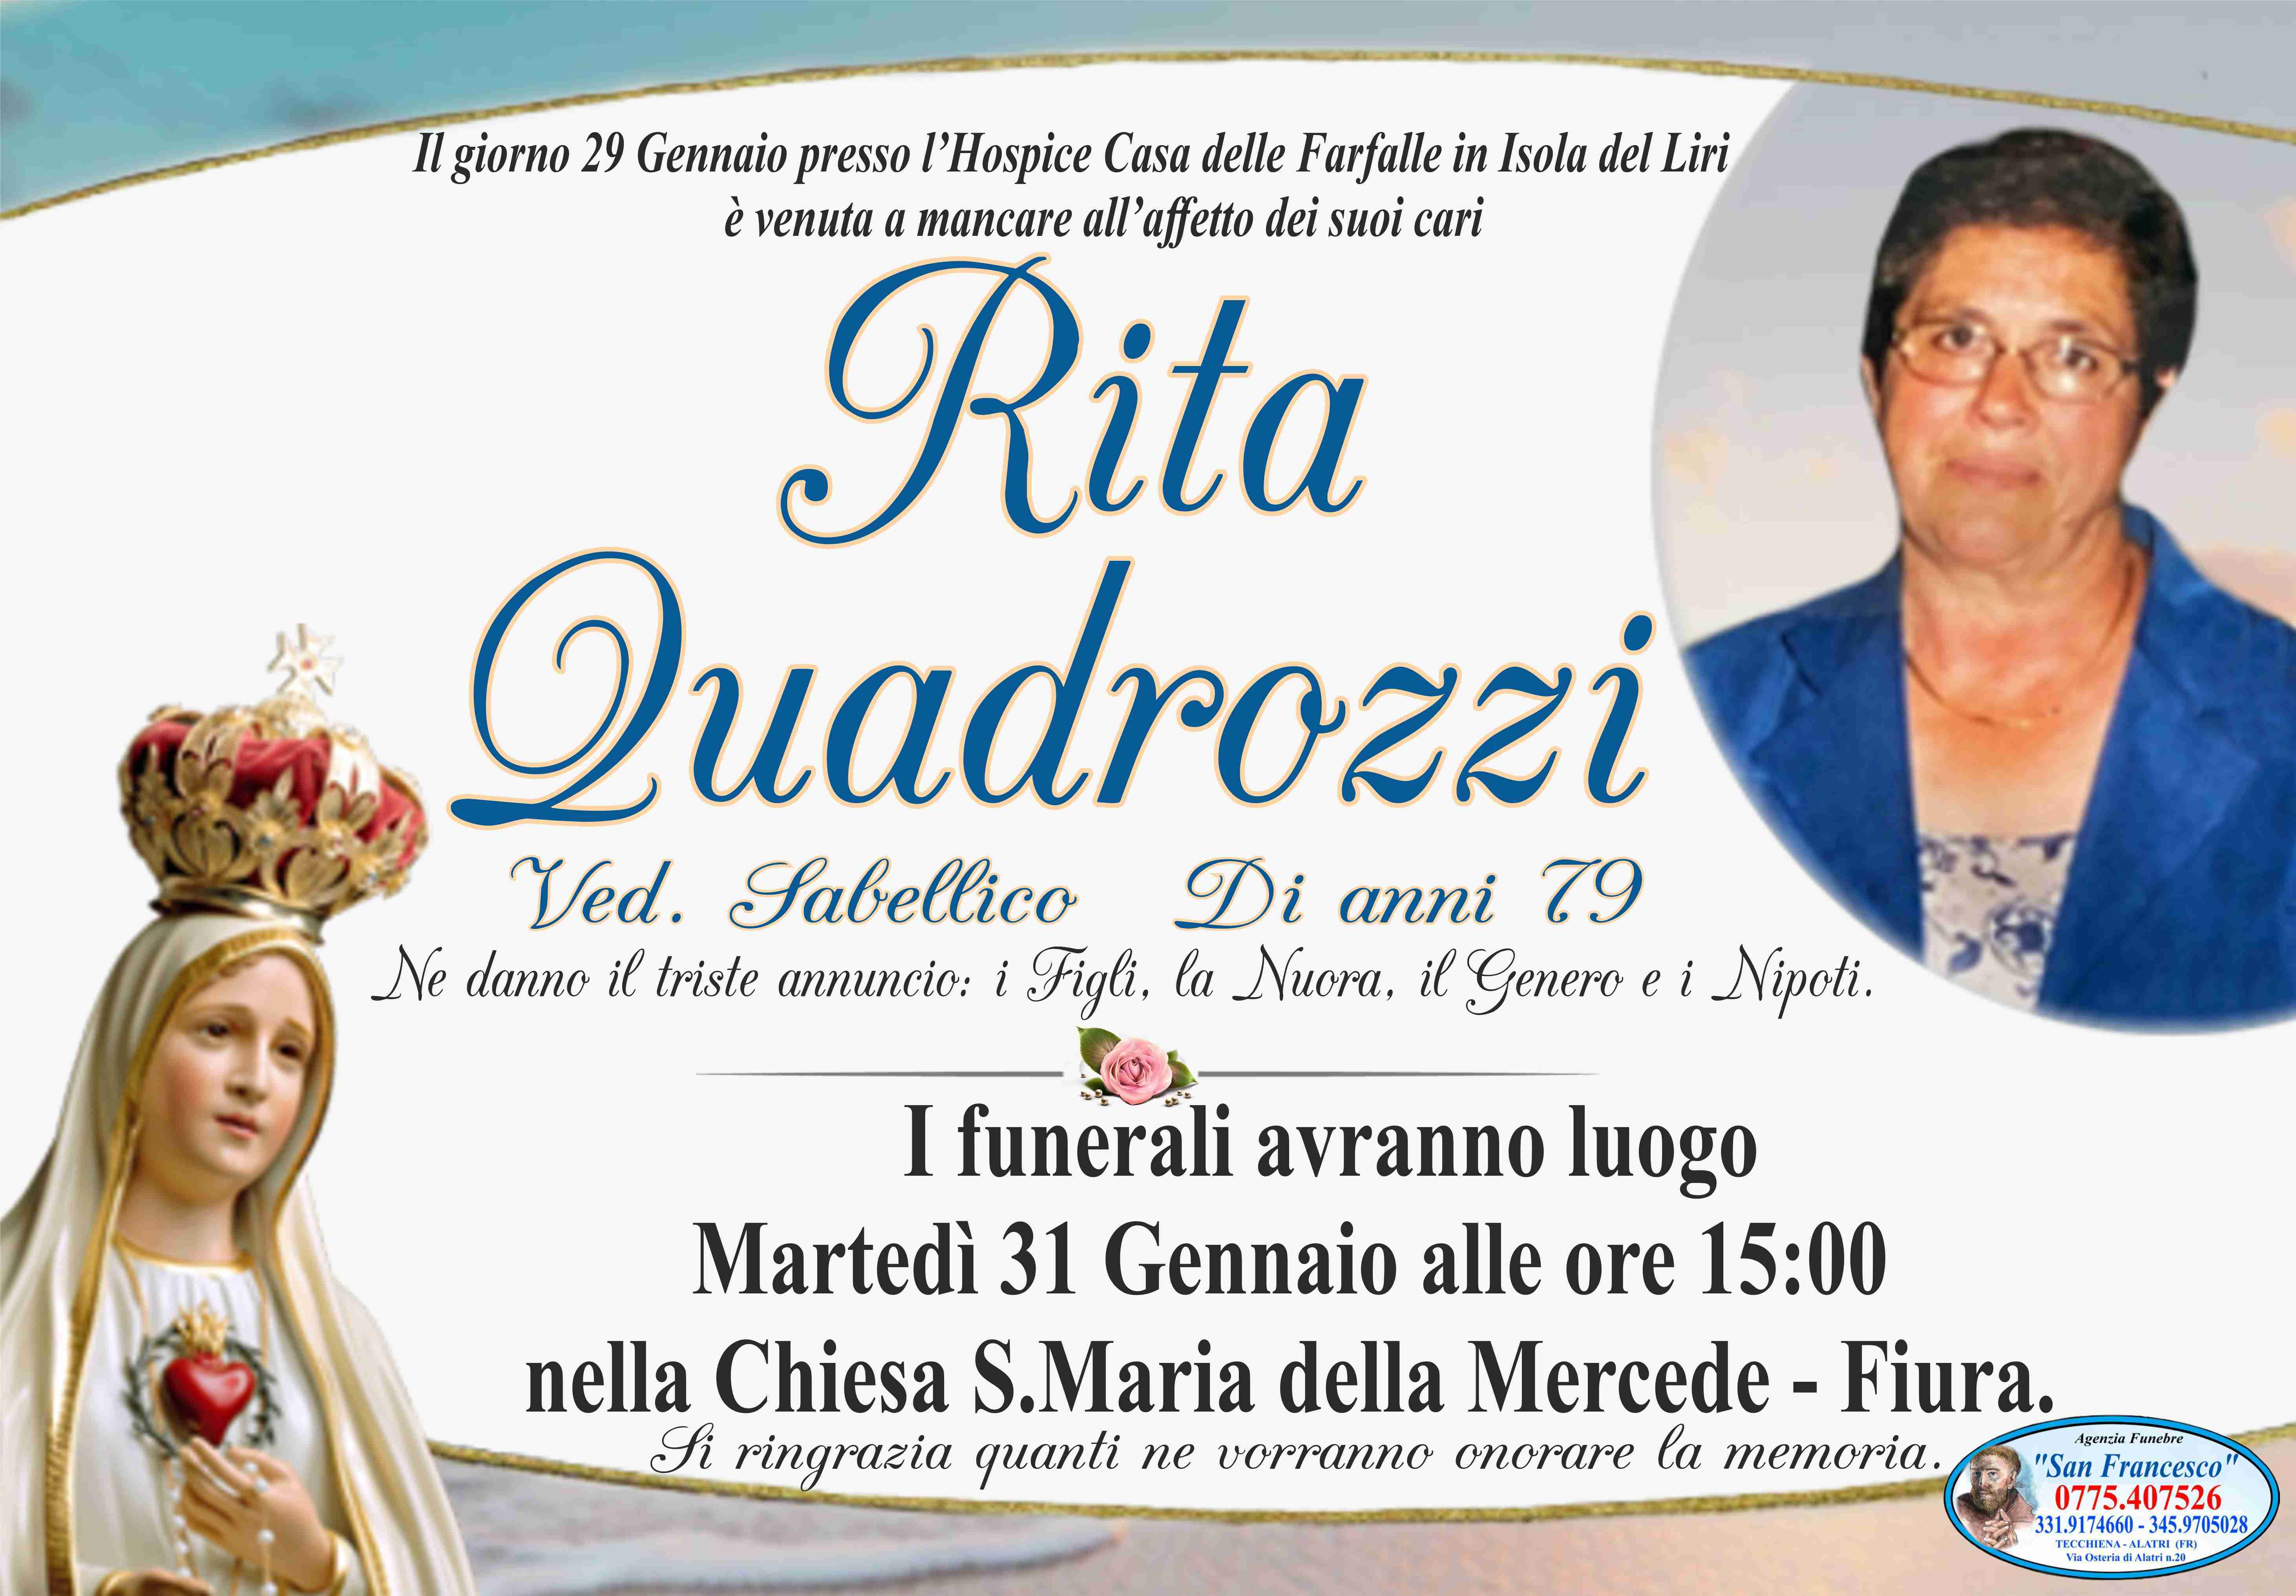 Rita Quadrozzi